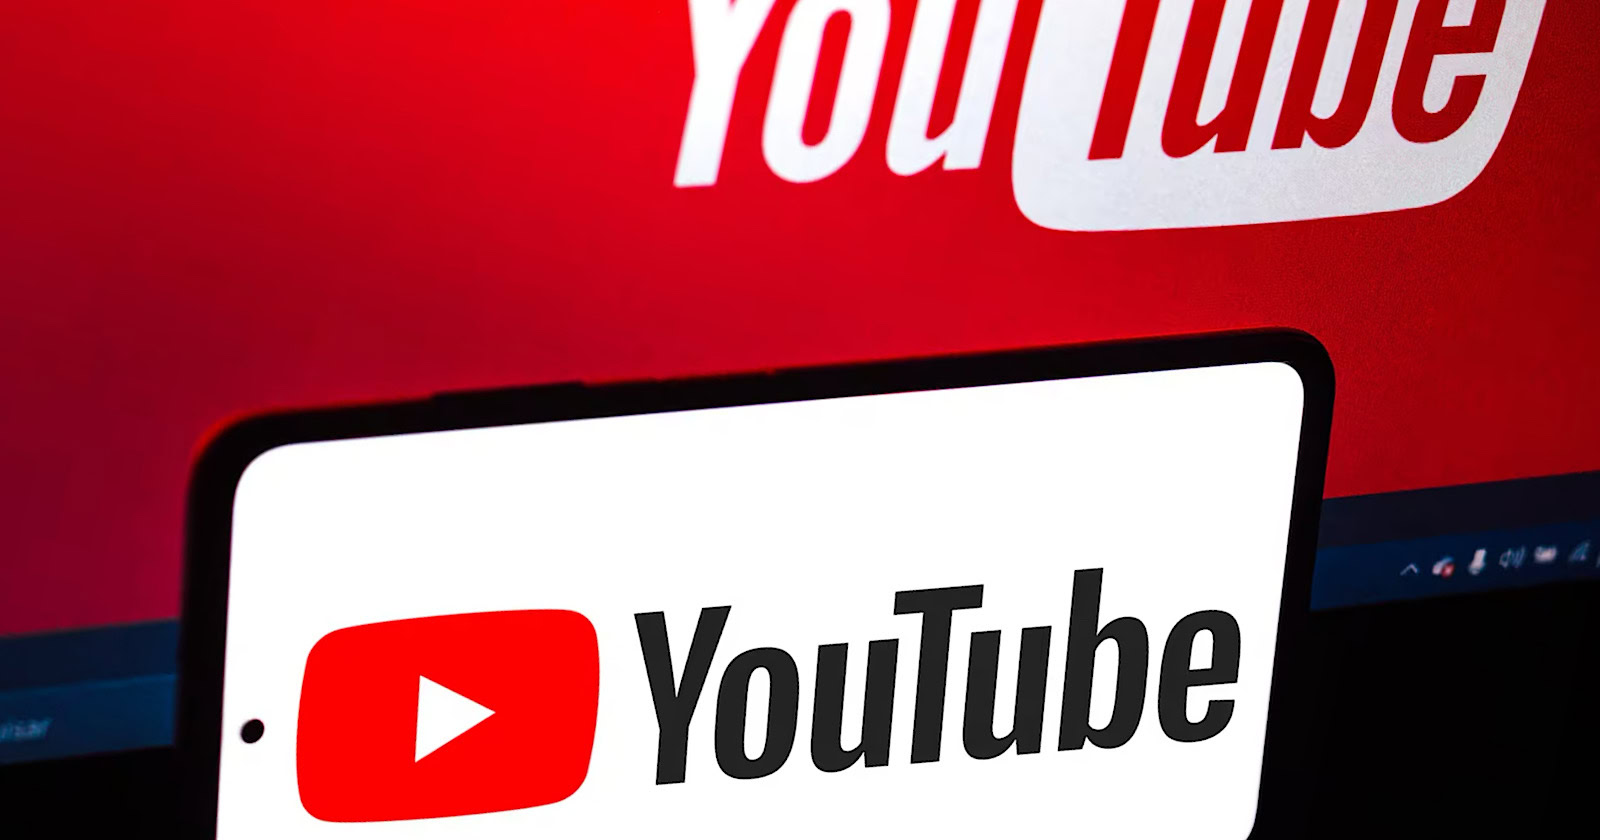 La nueva función de YouTube tiene como objetivo generar tendencias virales en cortos